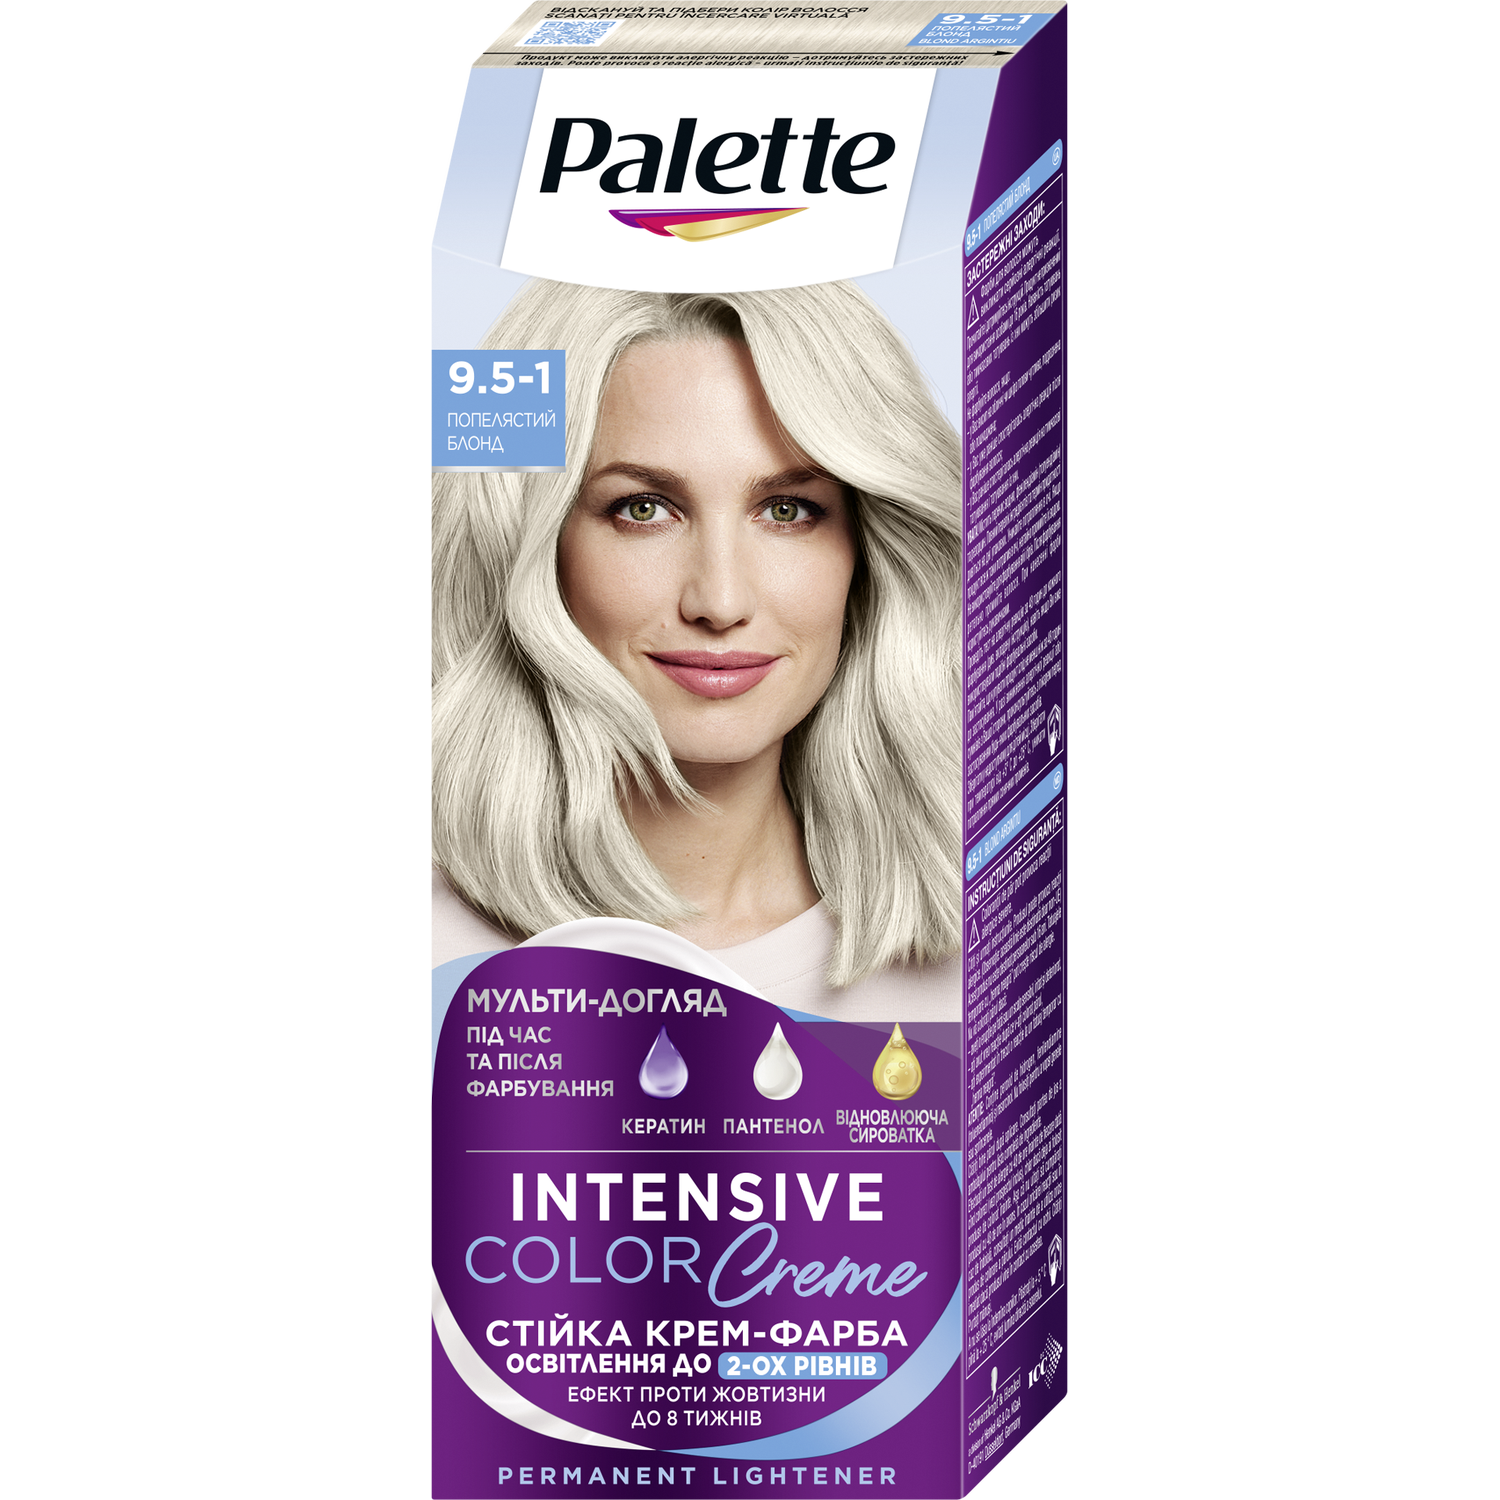 Фарба для волосся Palette ICC 9.5-1 Попелястий блонд 110 мл - фото 1